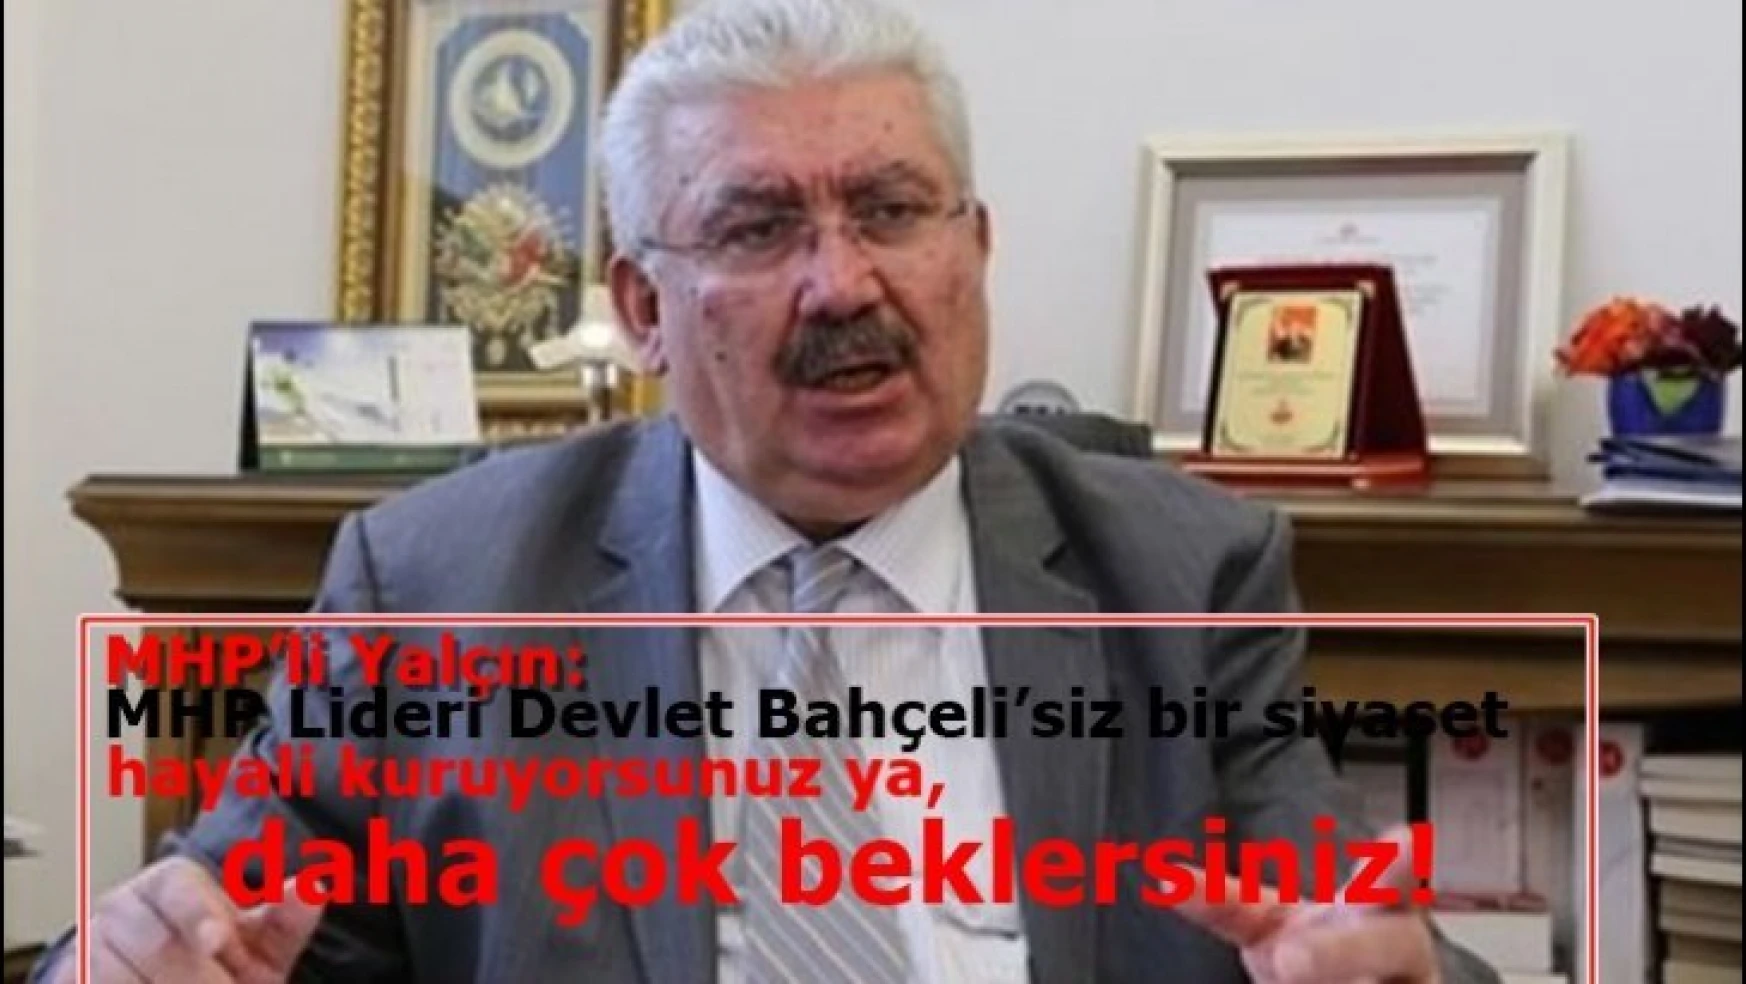 MHP'li Yalçın: MHP Lideri Devlet Bahçeli'siz bir siyaset hayali kuruyorsunuz ya, daha çok beklersiniz!